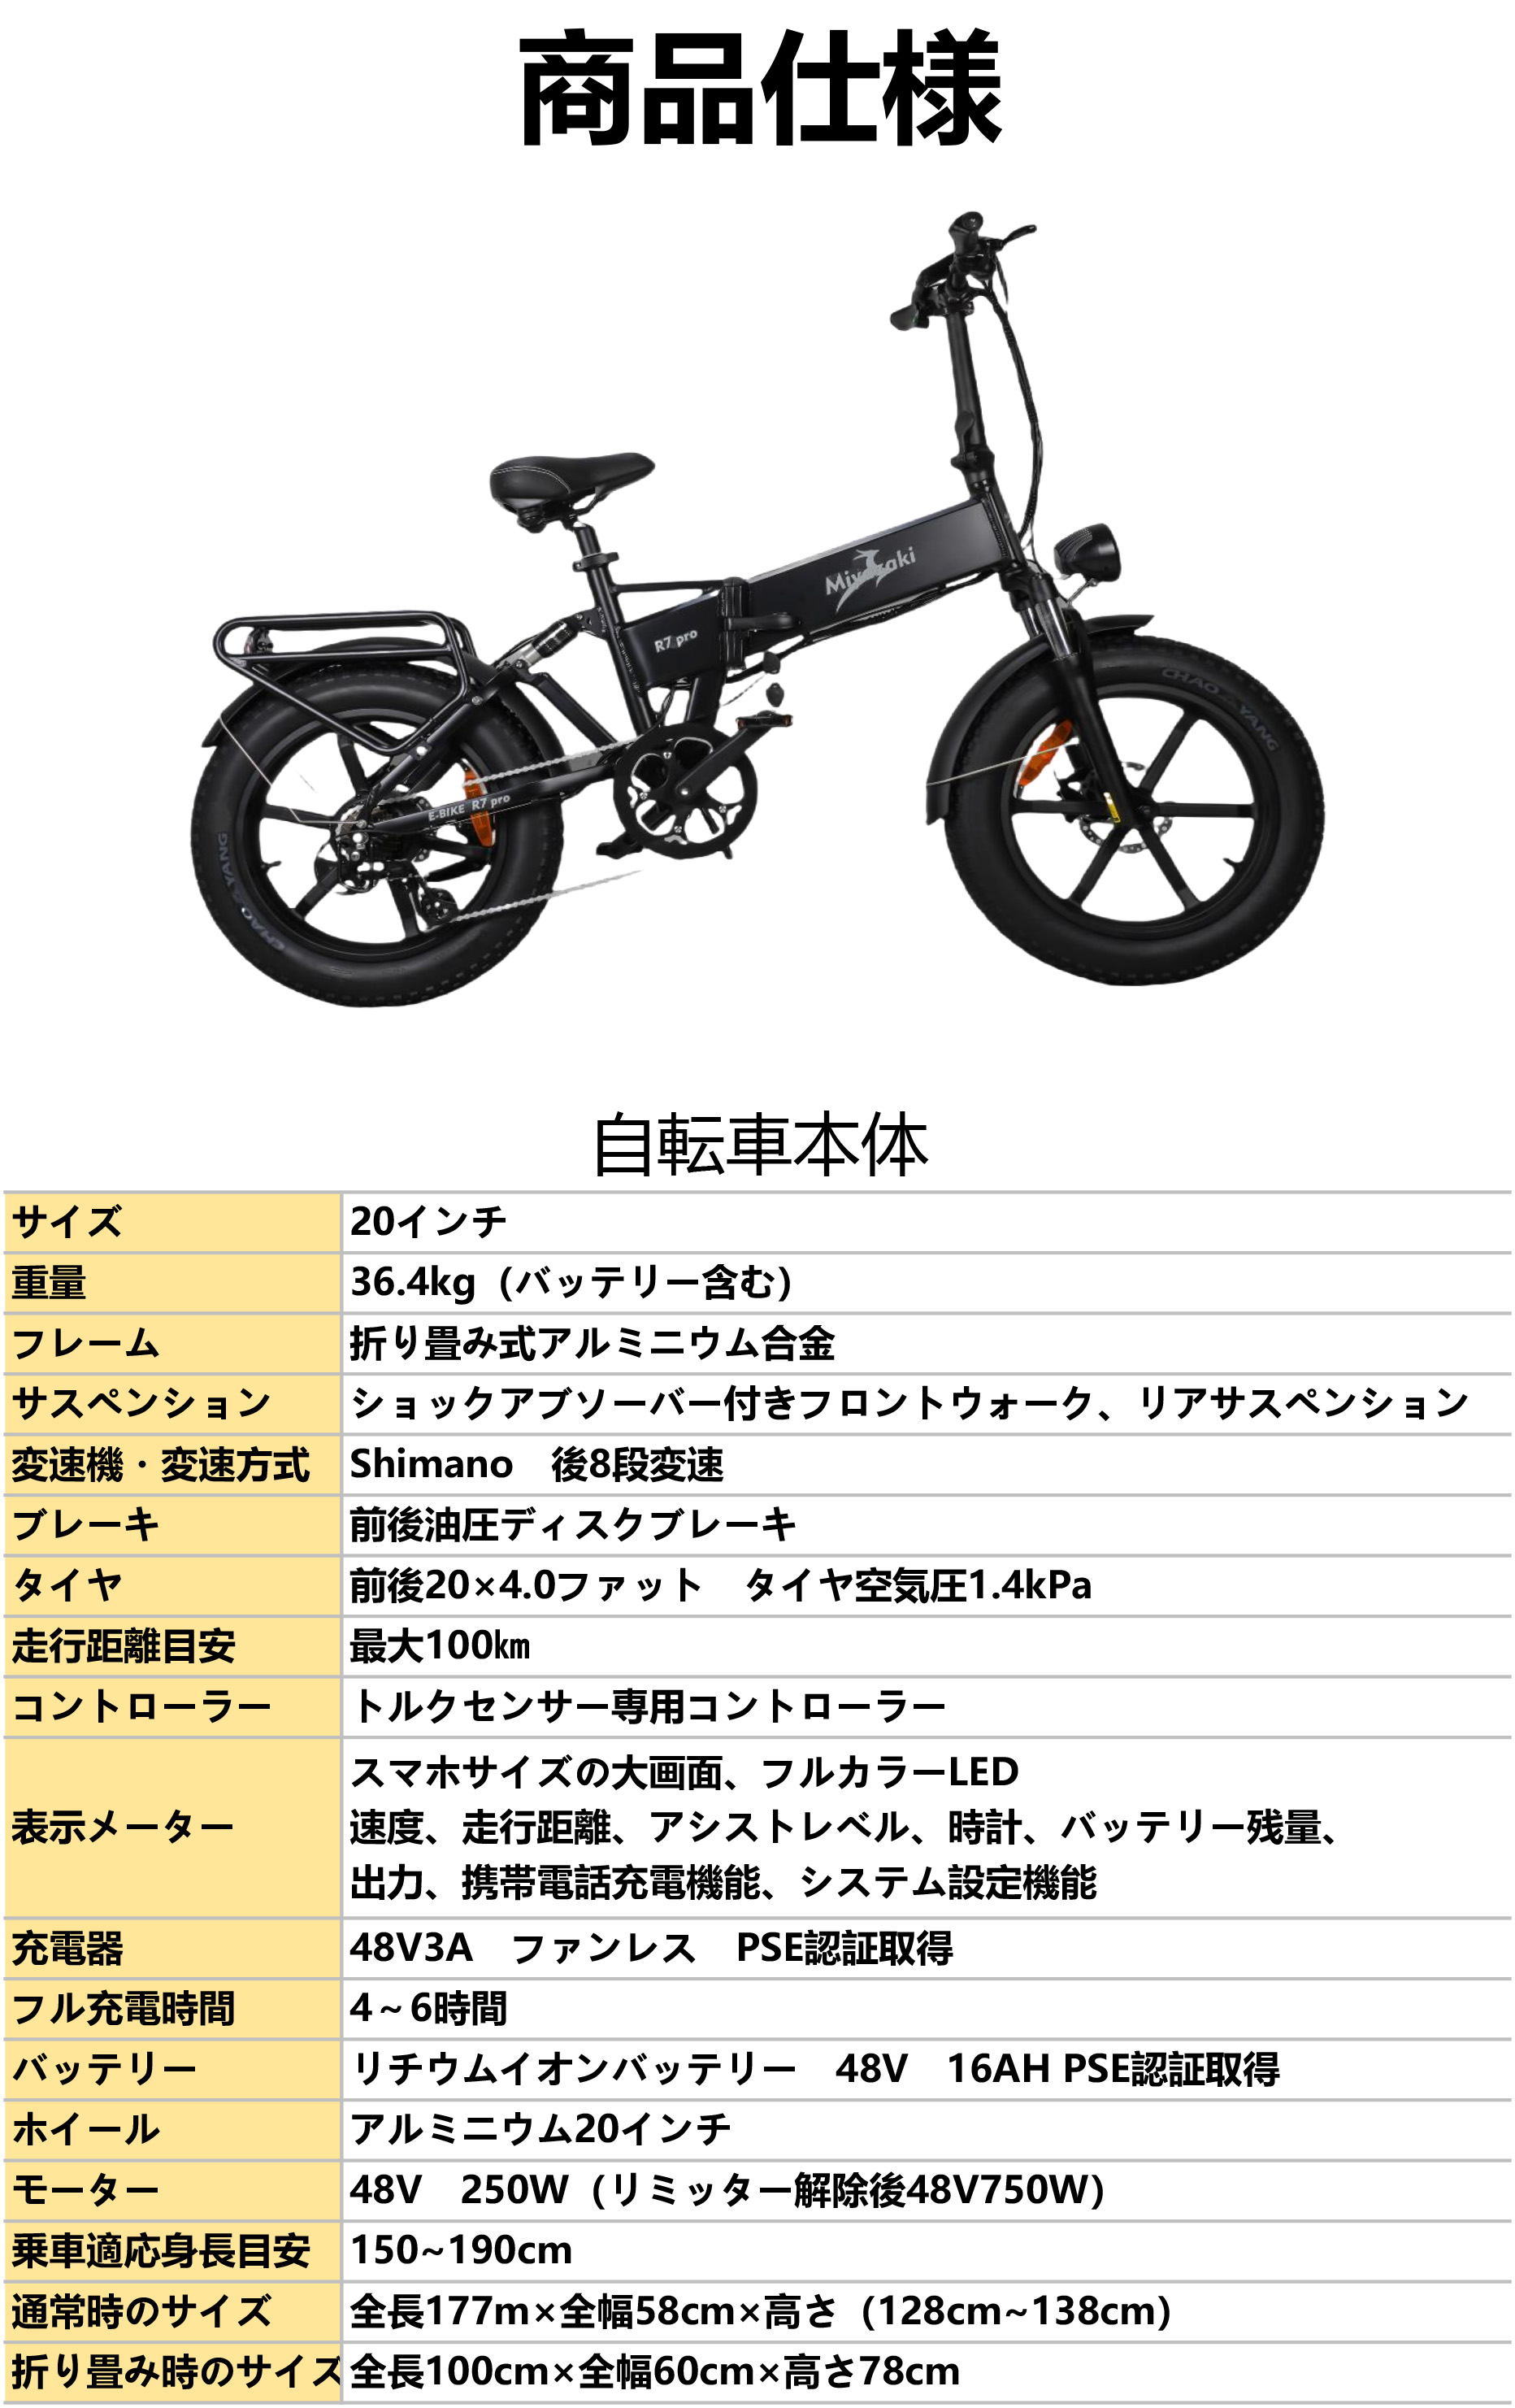 送料無料 E-bike ENKEI R7 PROファットバイク 電動アシスト自転車 マウンテンバイク 750W  48V16AH迫力の極太タイヤ20×4.0折りたたみ自転車 スノーホイール